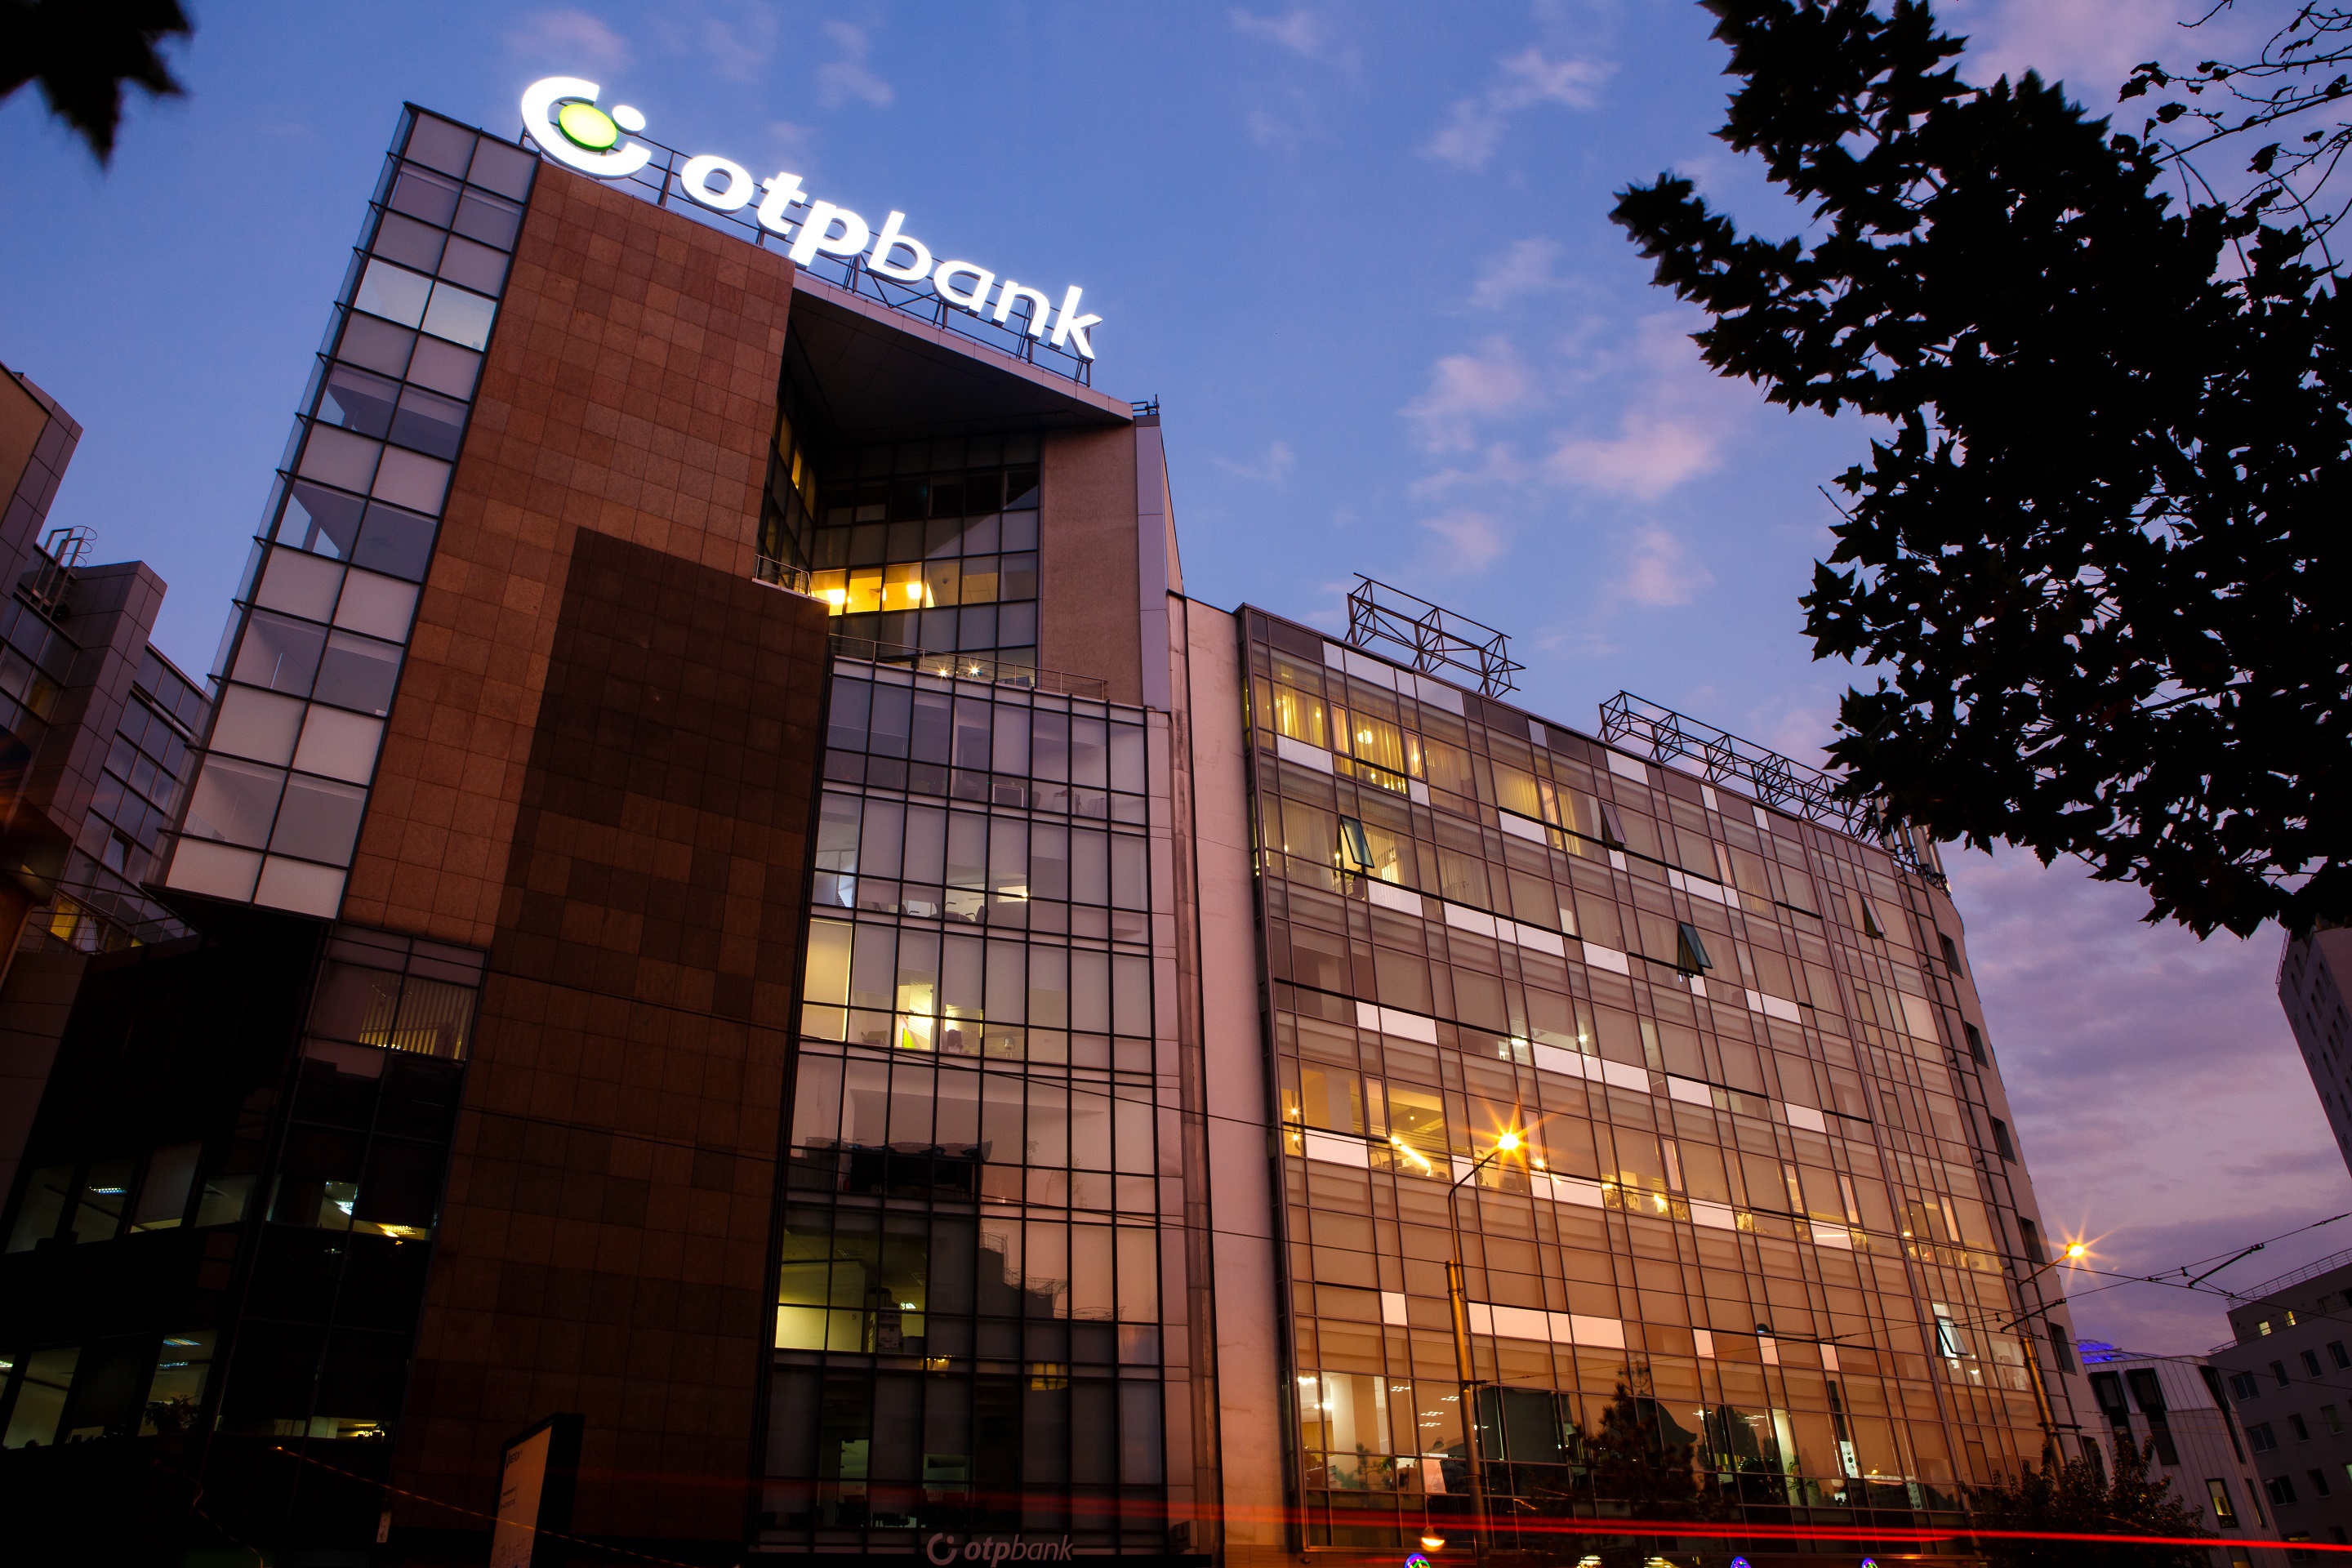 Apar primele raportări SAF-T: OTP Bank anunţă că a depus declaraţia de control fiscal în format SAF-T. Procesul a implicat prelucrarea a peste 1,5 milioane de tranzacţii şi corelarea a peste 320 de indicatori din sistemele operaţionale ale băncii